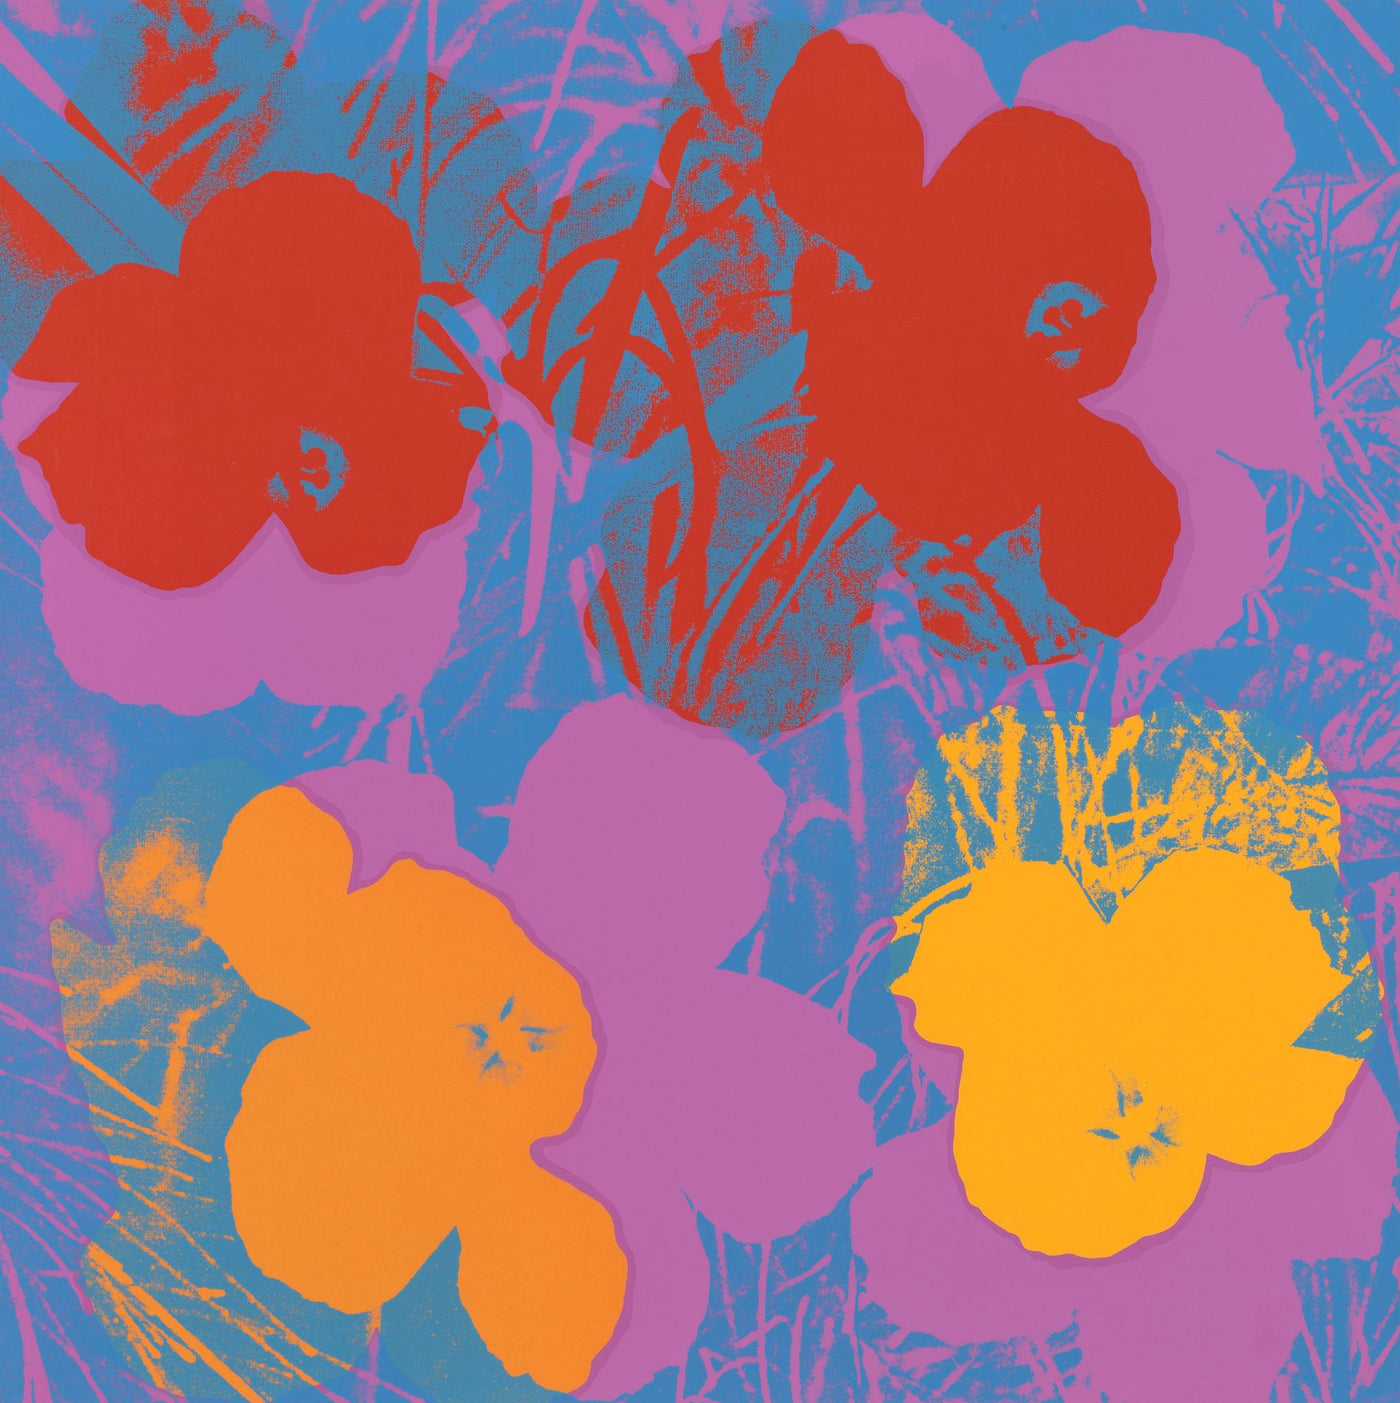 Andy Warhol Flowers (Feldman II.66) 1970